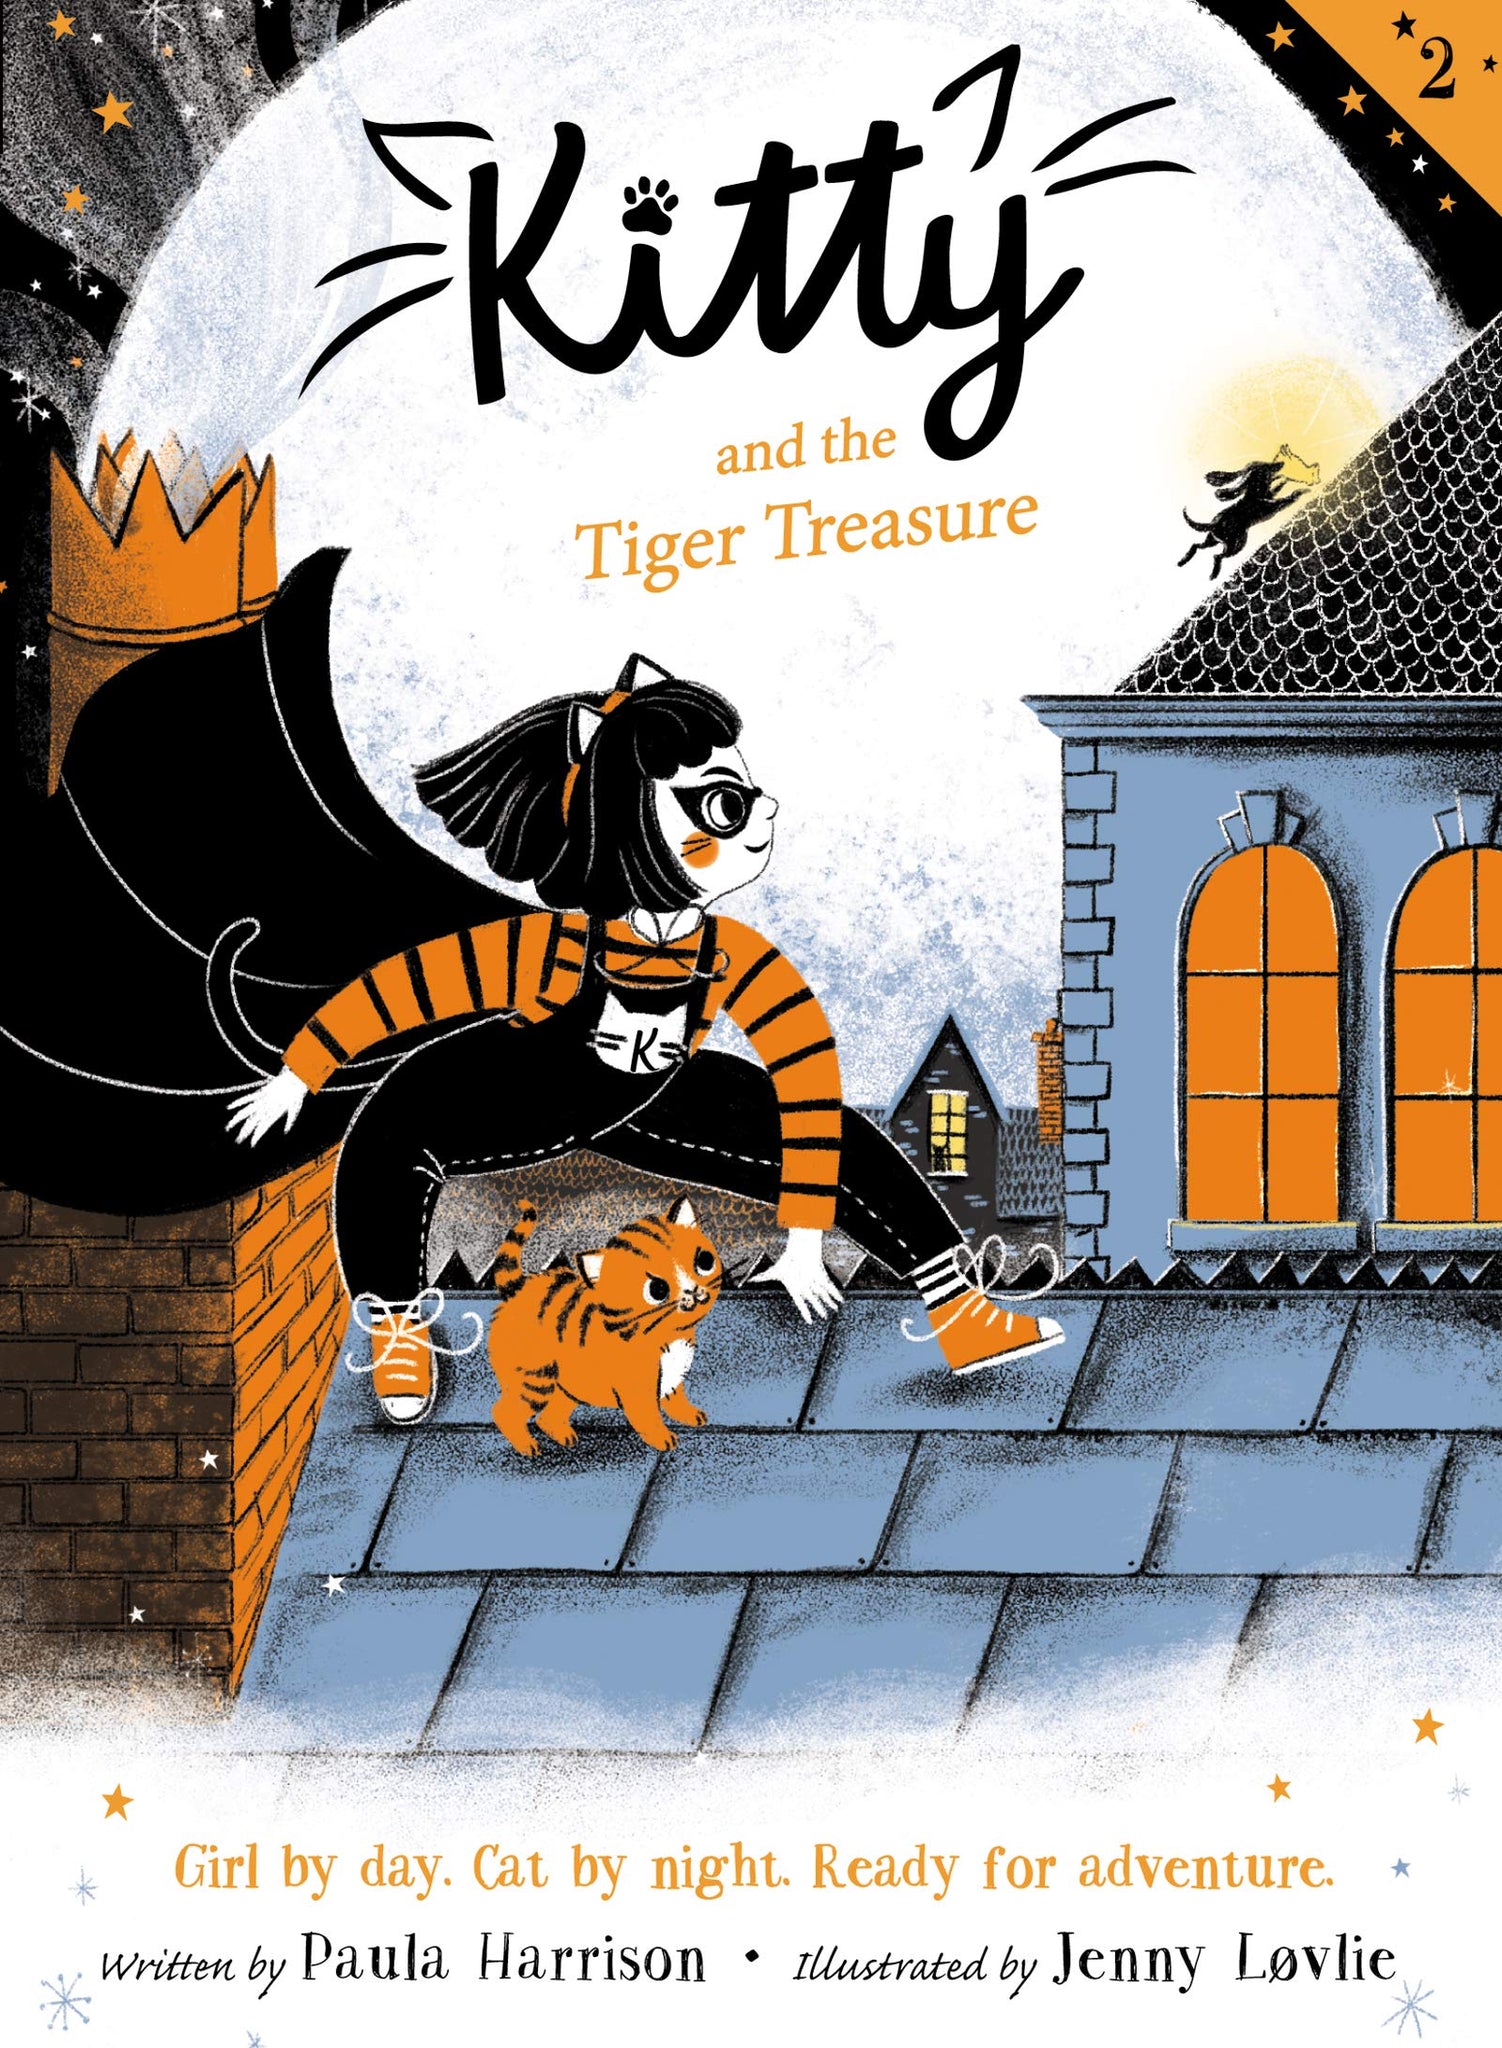 Kitty #2 : Kitty & the Tiger Treasure by Paula Harrison